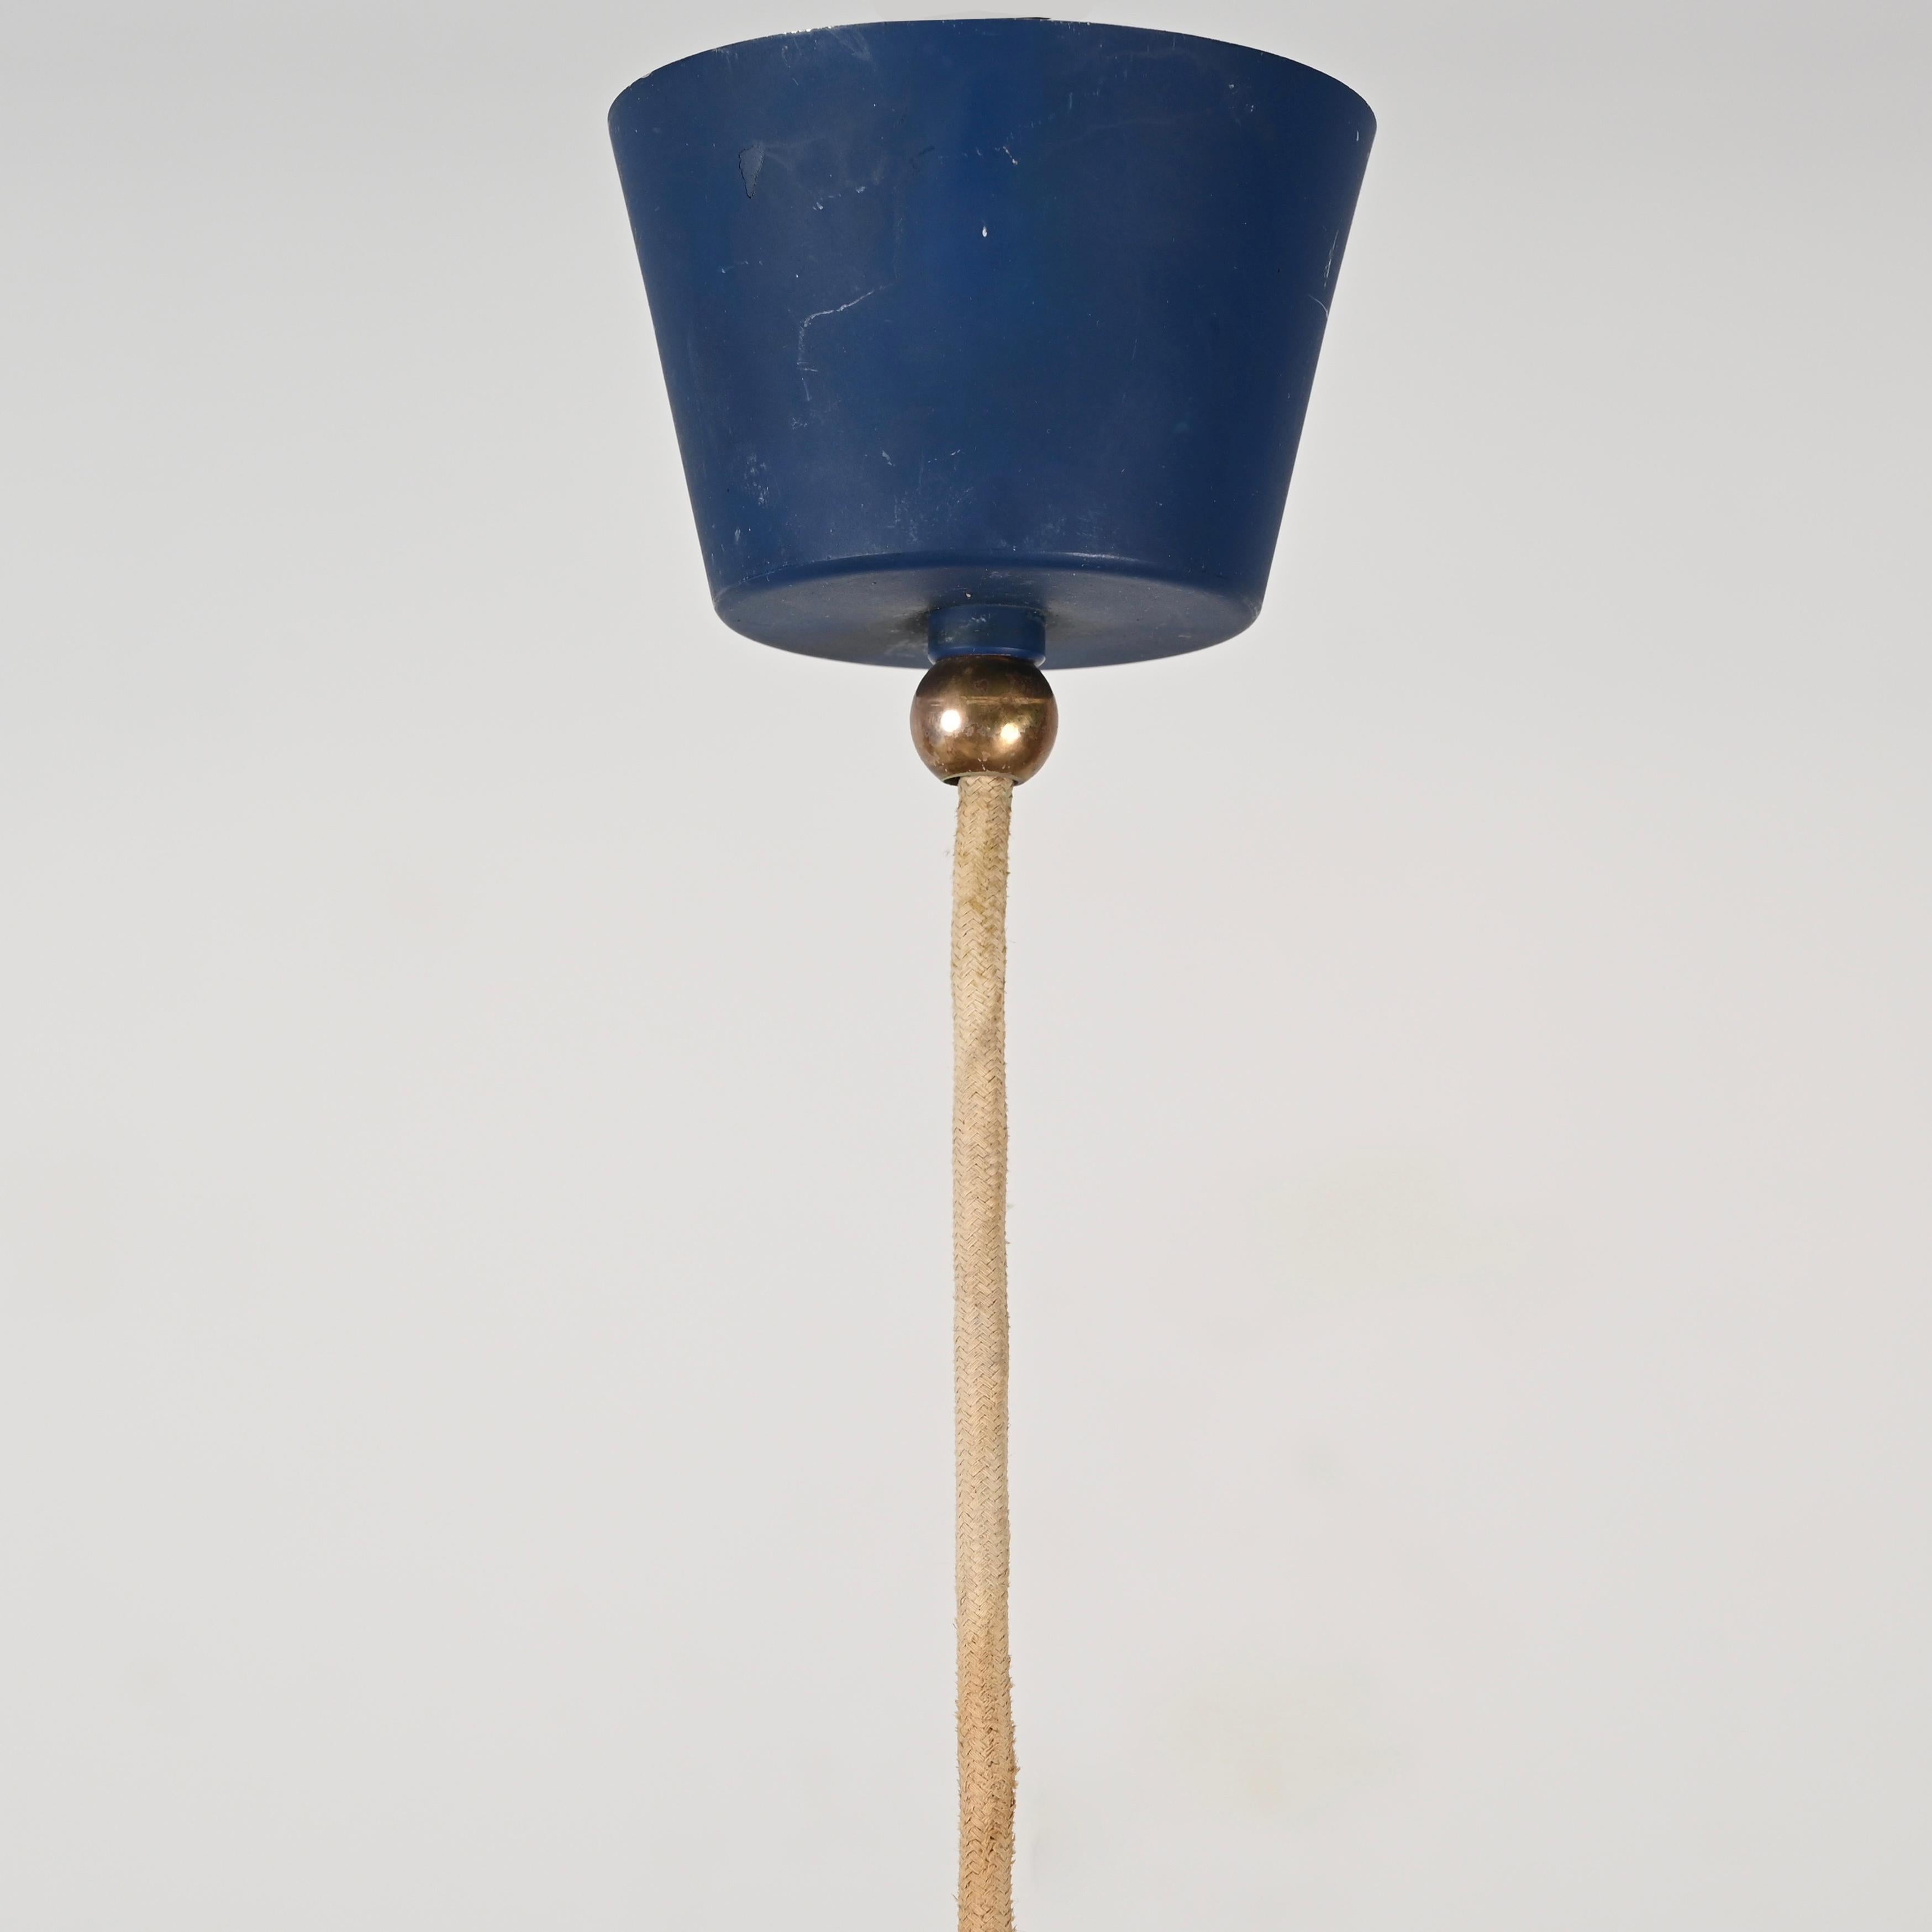 Stilnovo Opal Glass, Brass and Blue Metal Pendant Lamp, Italian Lighting 1950s For Sale 1